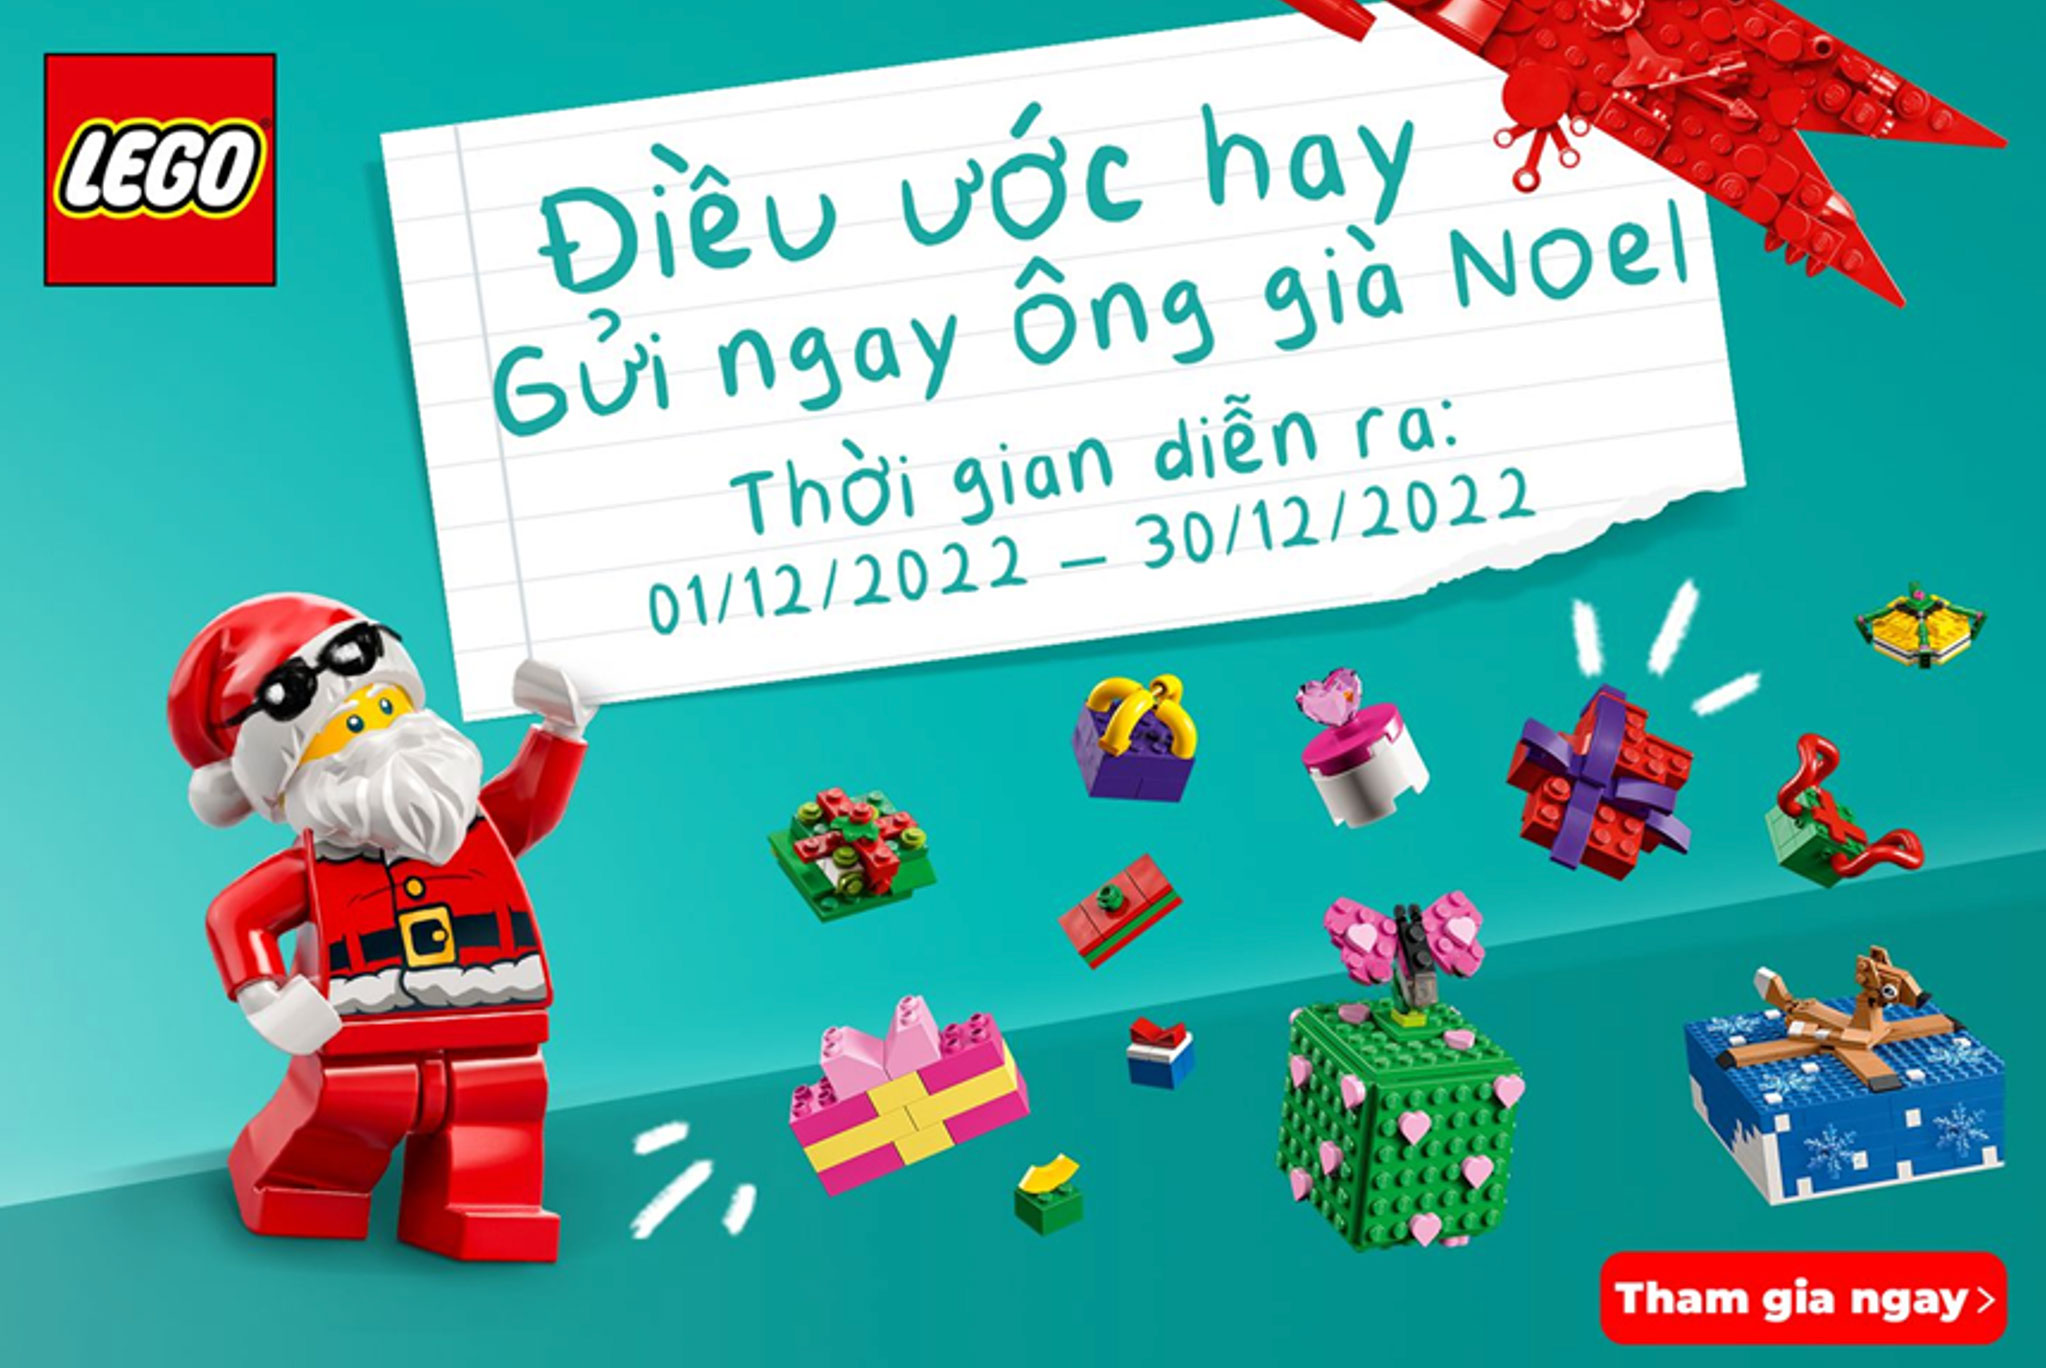 Tận hưởng giáng sinh an lành và vui vẻ cùng LEGO®